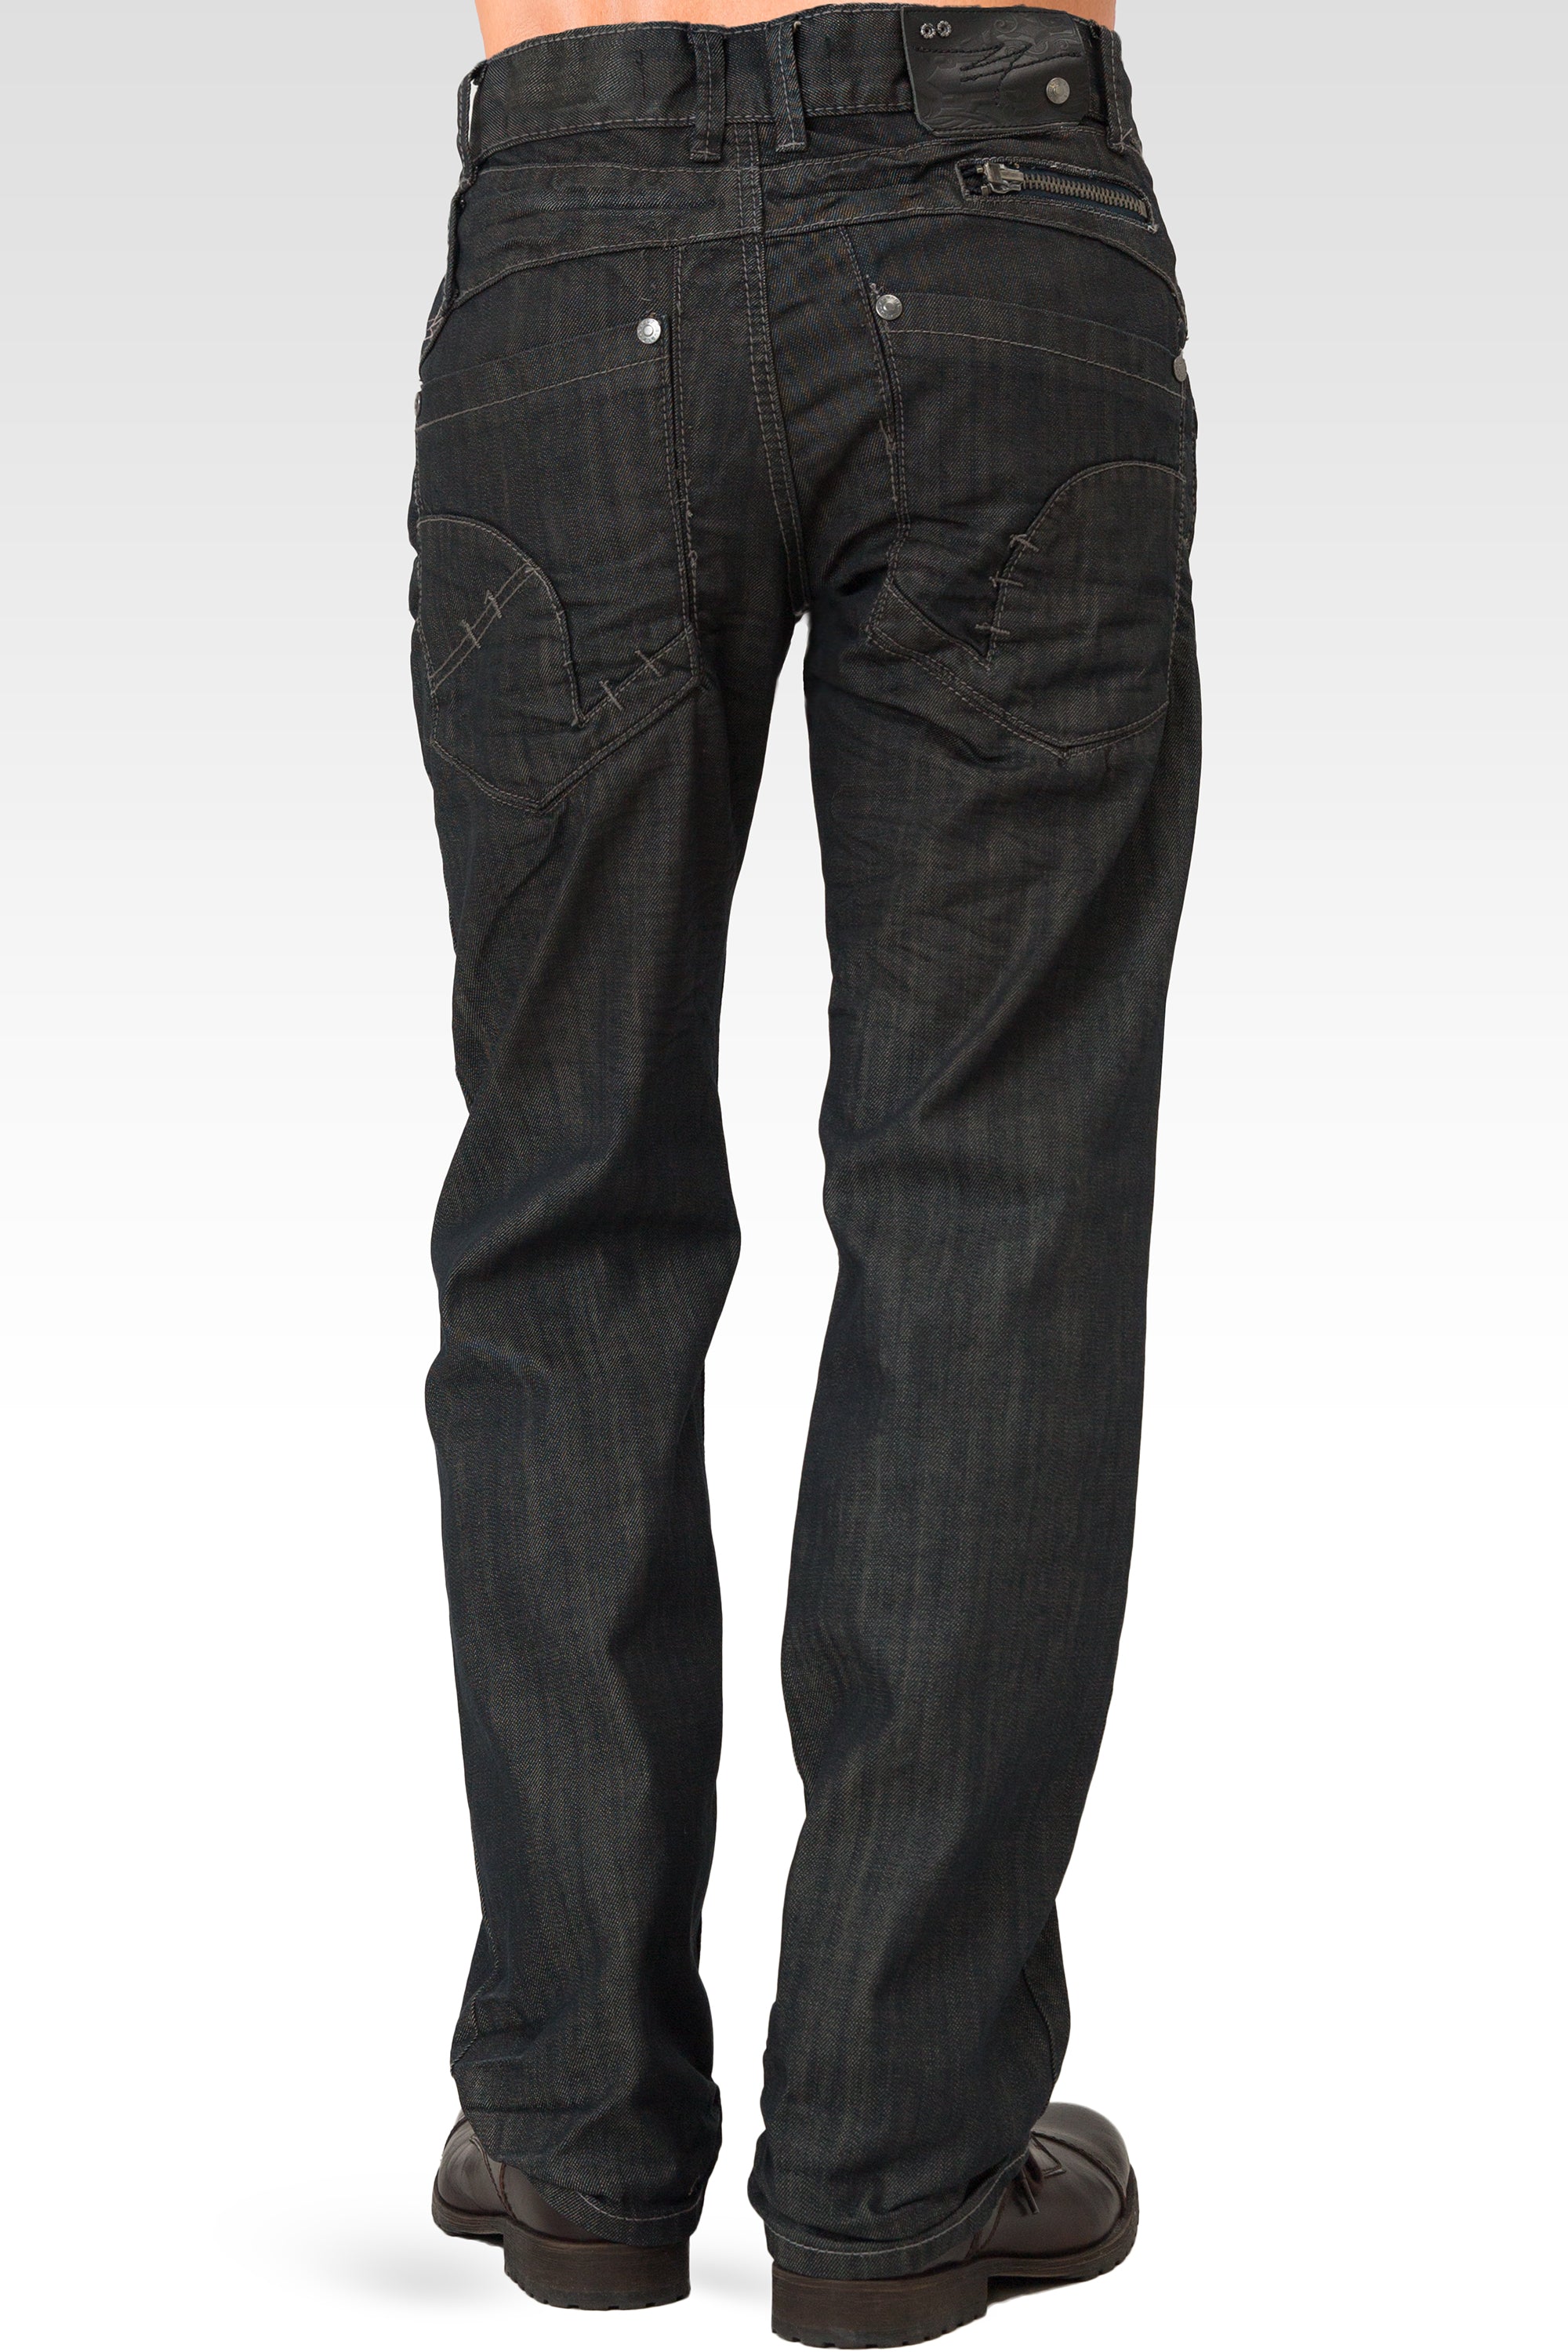 Aja munt driehoek Level 7 Men's Relaxed Straight Dark Blue Oil Stain Zipper Pocket Denim Jeans  – Level 7 Jeans